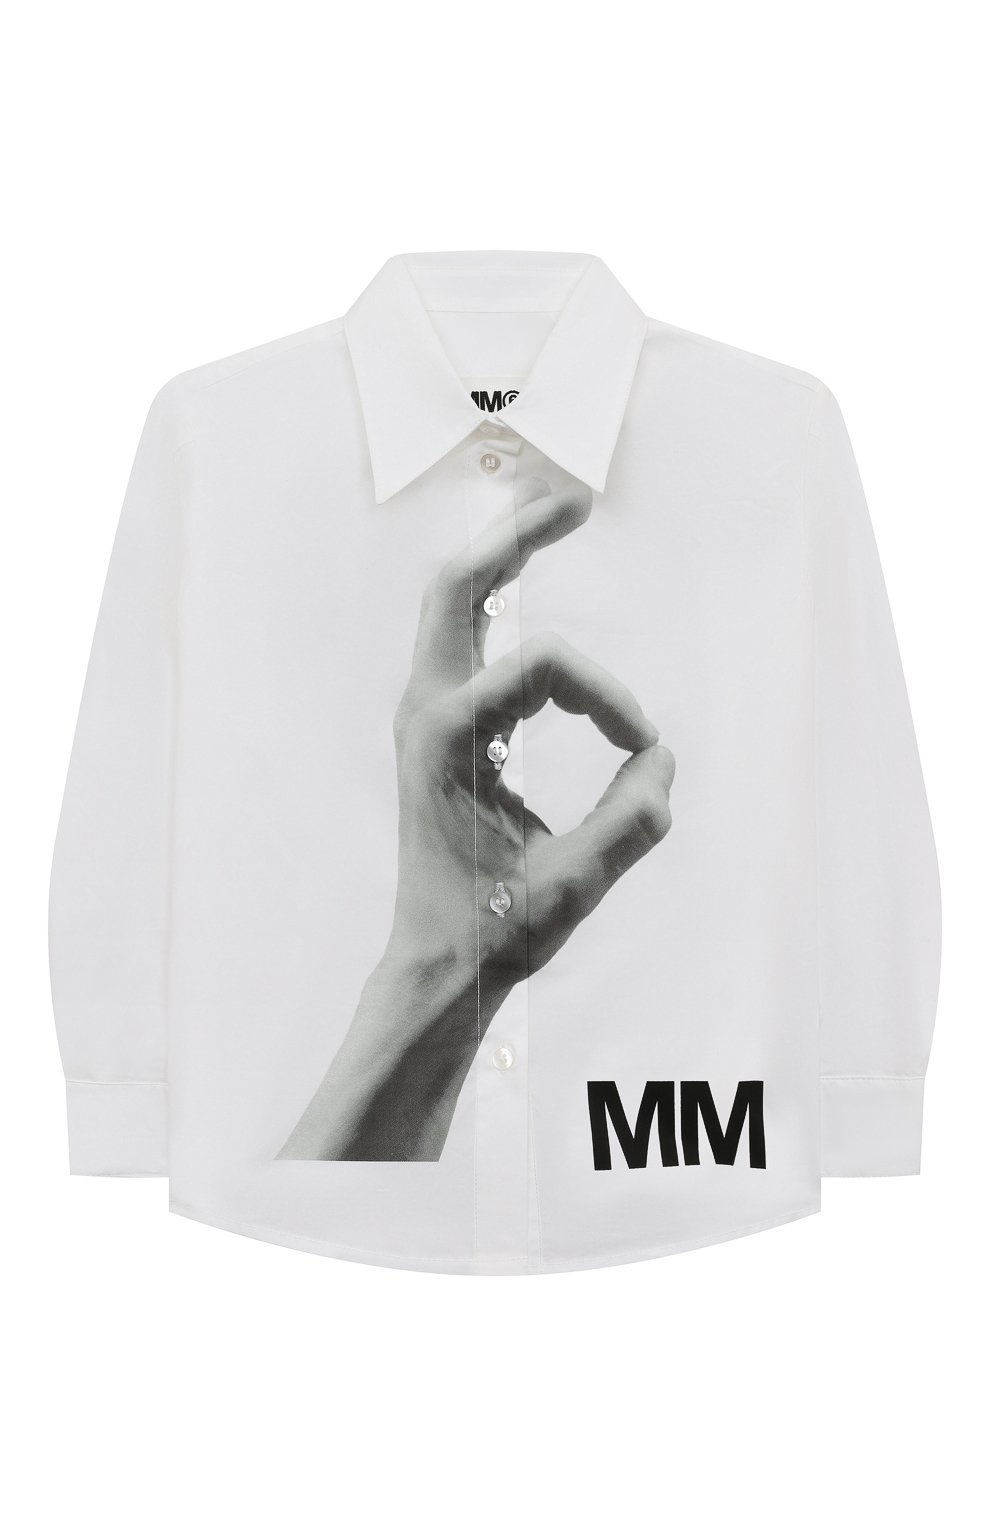 Блузы MM6, Хлопковая блузка MM6, Турция, Белый, Хлопок: 100%;, 12931207  - купить